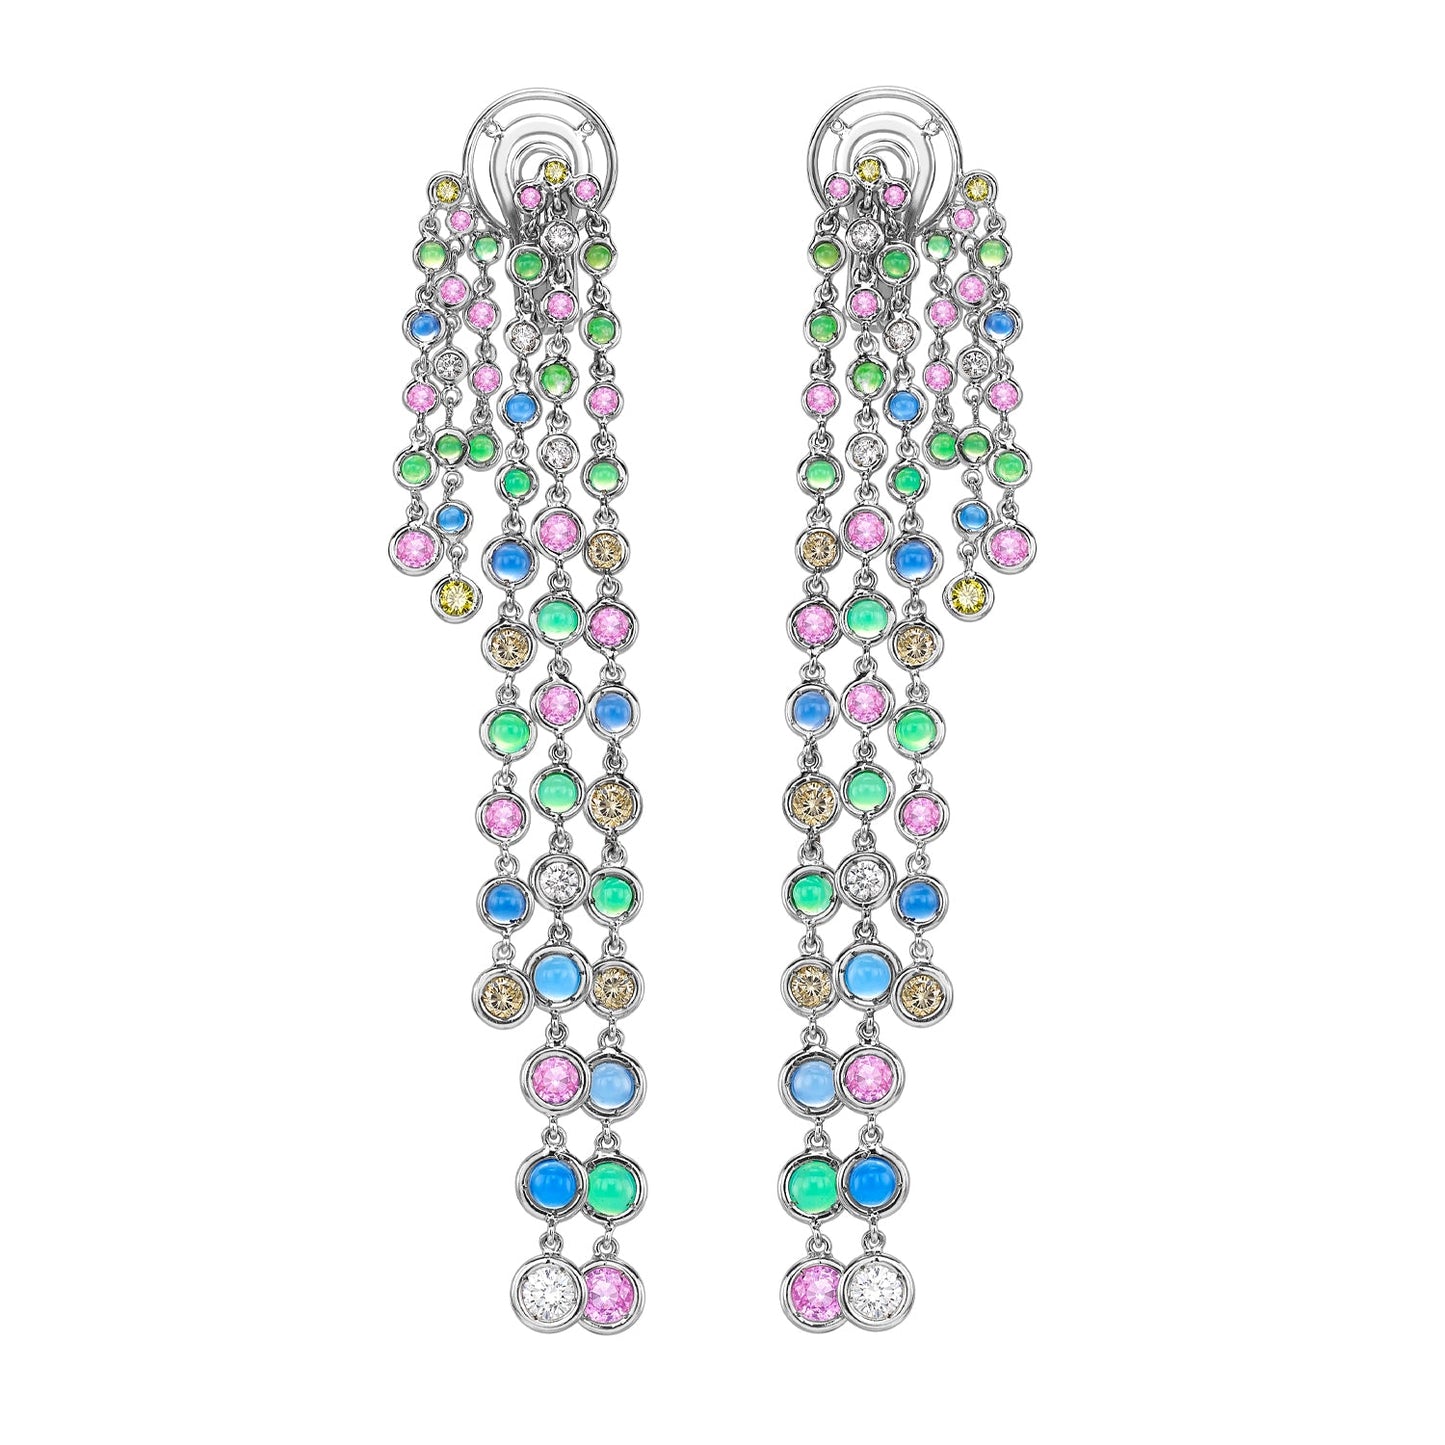 Colour Burst Earrings | Augustine Jewels | Bespoke Earrings London